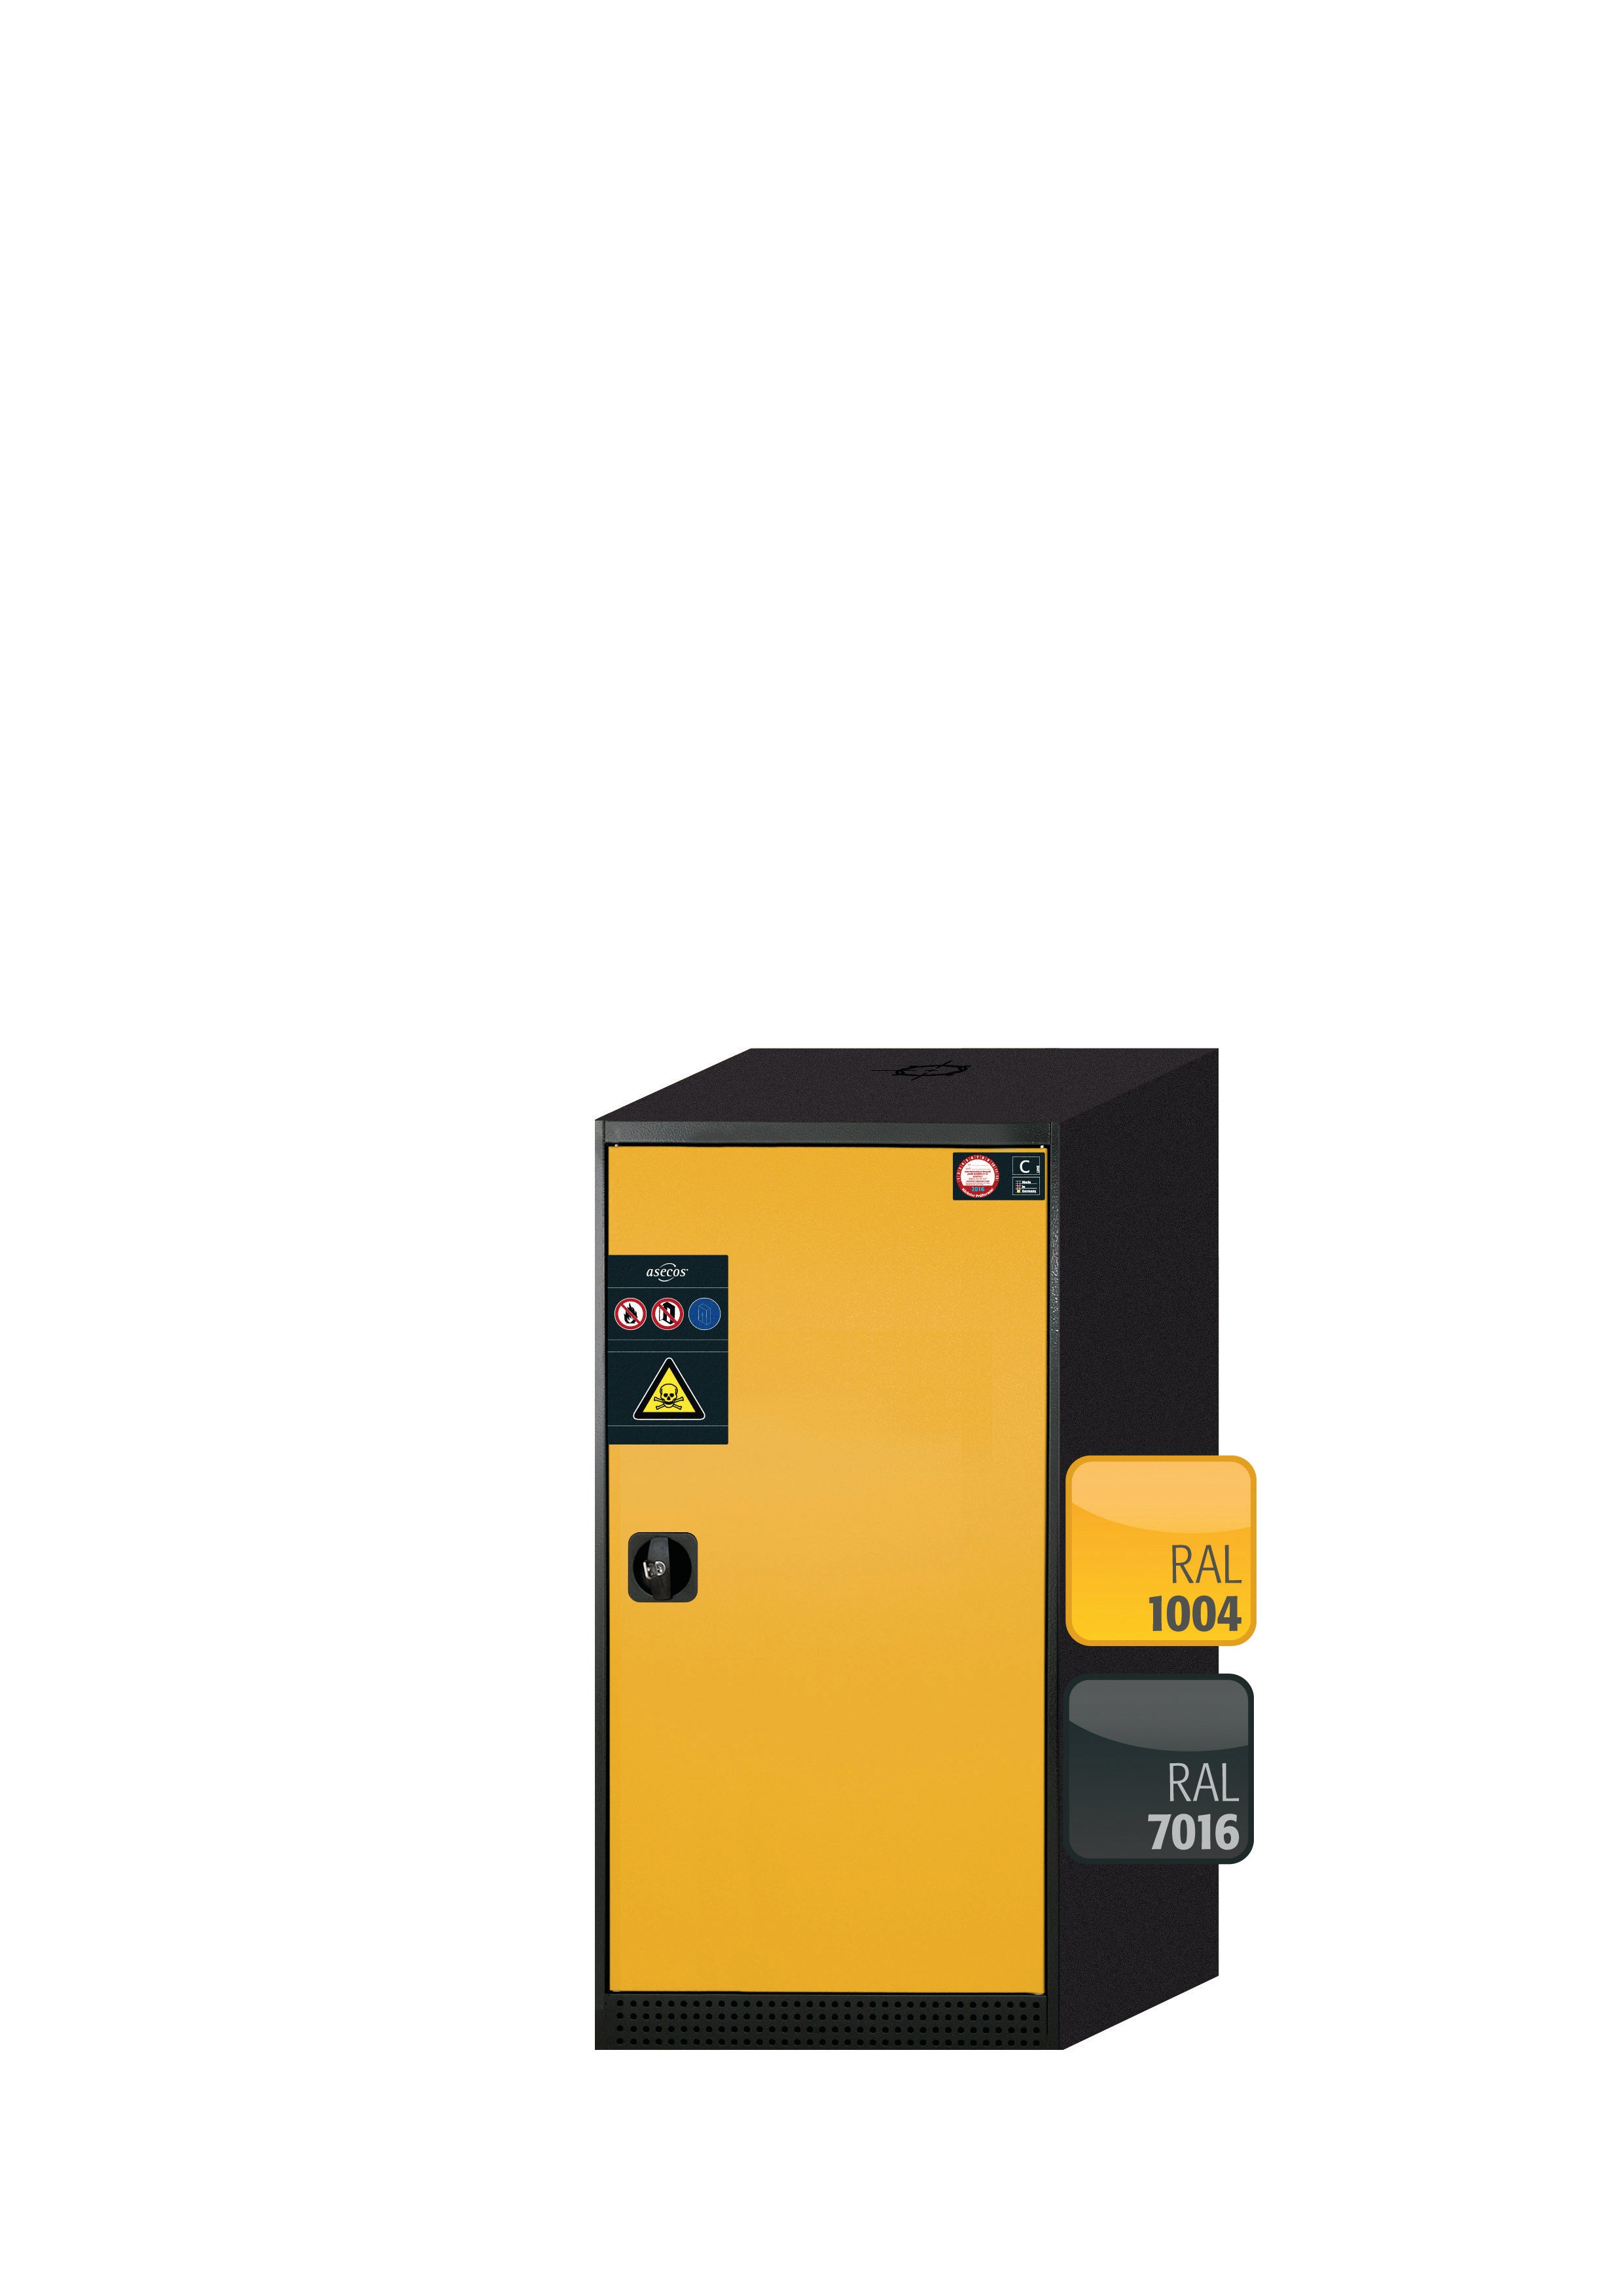 Armoire chimique CS-CLASSIC modèle CS.110.054.R en jaune sécurité RAL 1004 avec 3 étagères coulissantes AbZ (tôle d'acier/polypropylène)